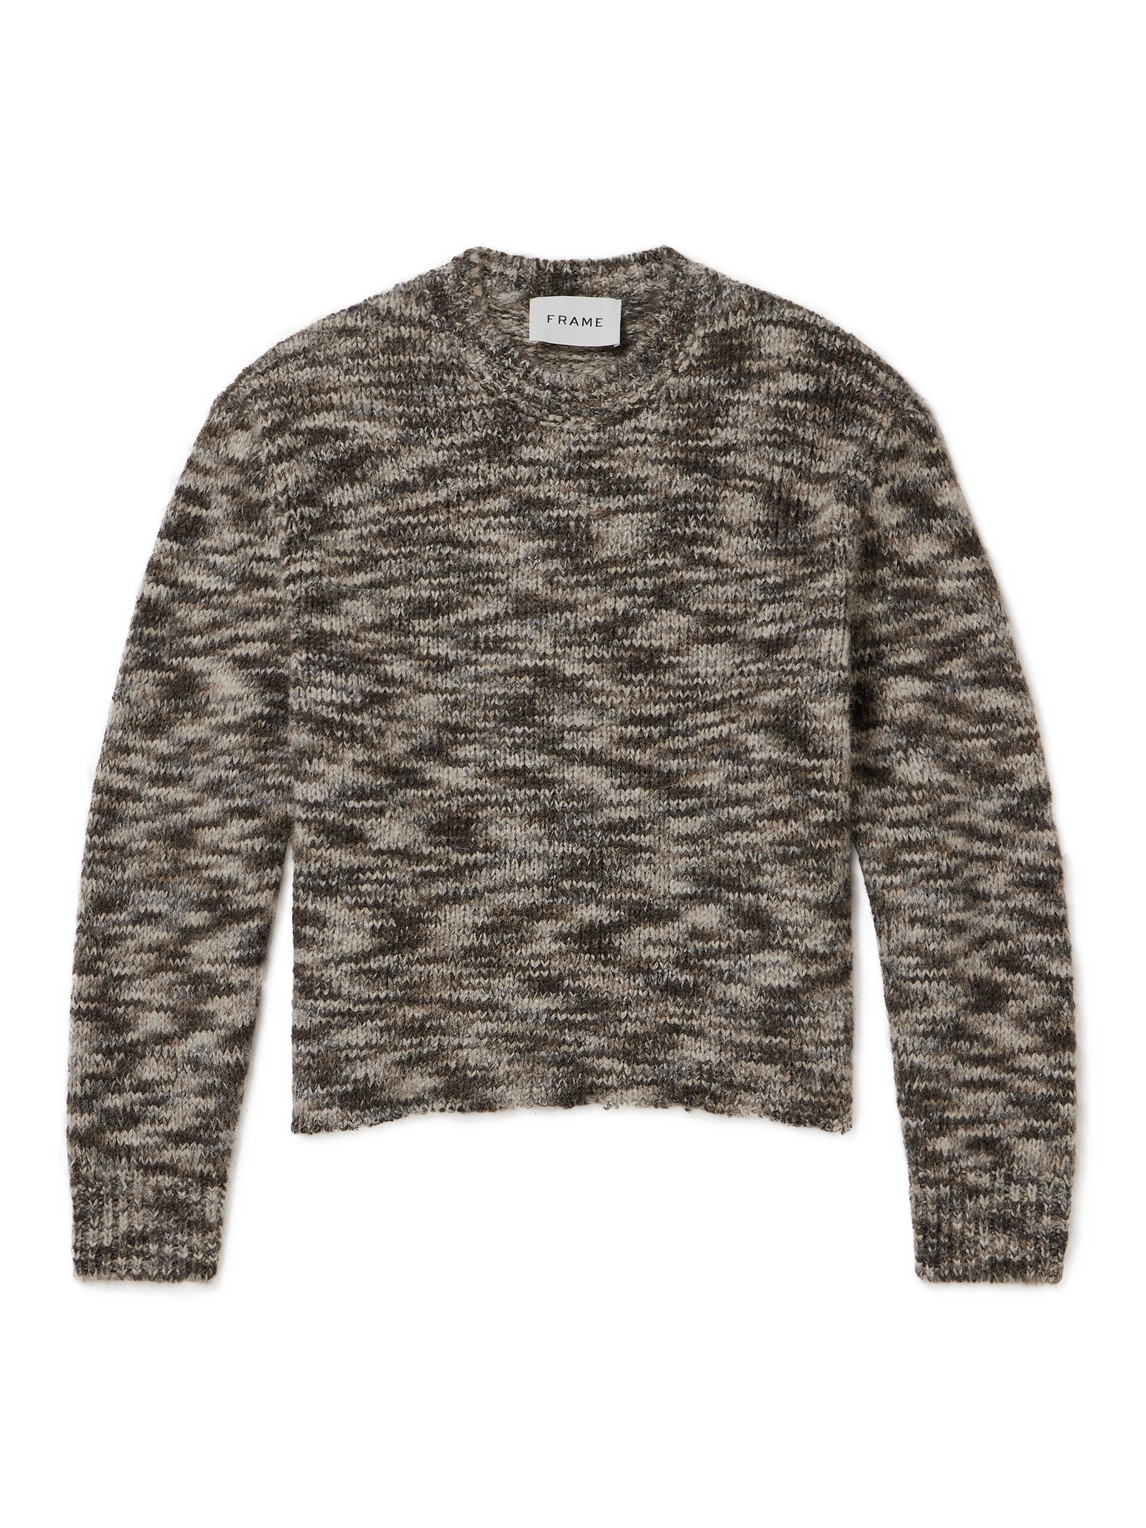 FRAME - Knitted Sweater - Men - Brown - XL von FRAME